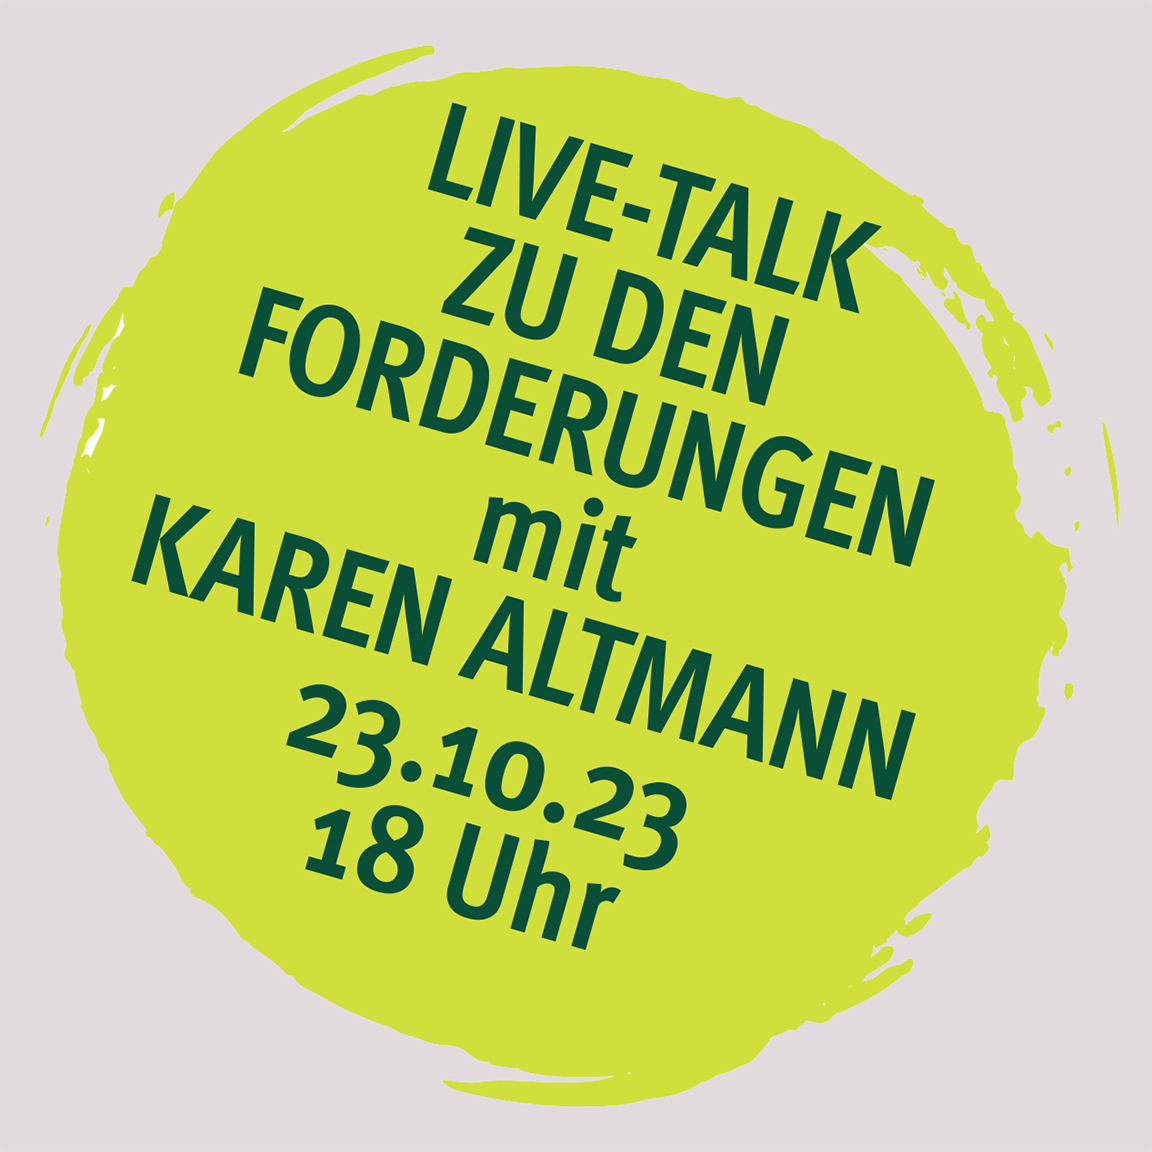 Einkommensrunde 2023: Online-Talk mit Karen Altmann am 23.10.23 – 18 Uhr